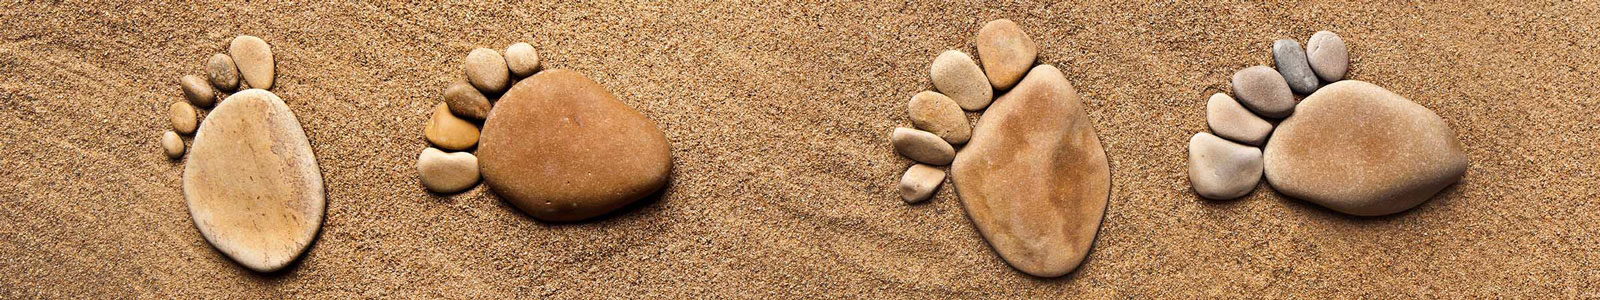 №3821 - Следы из камней на песке